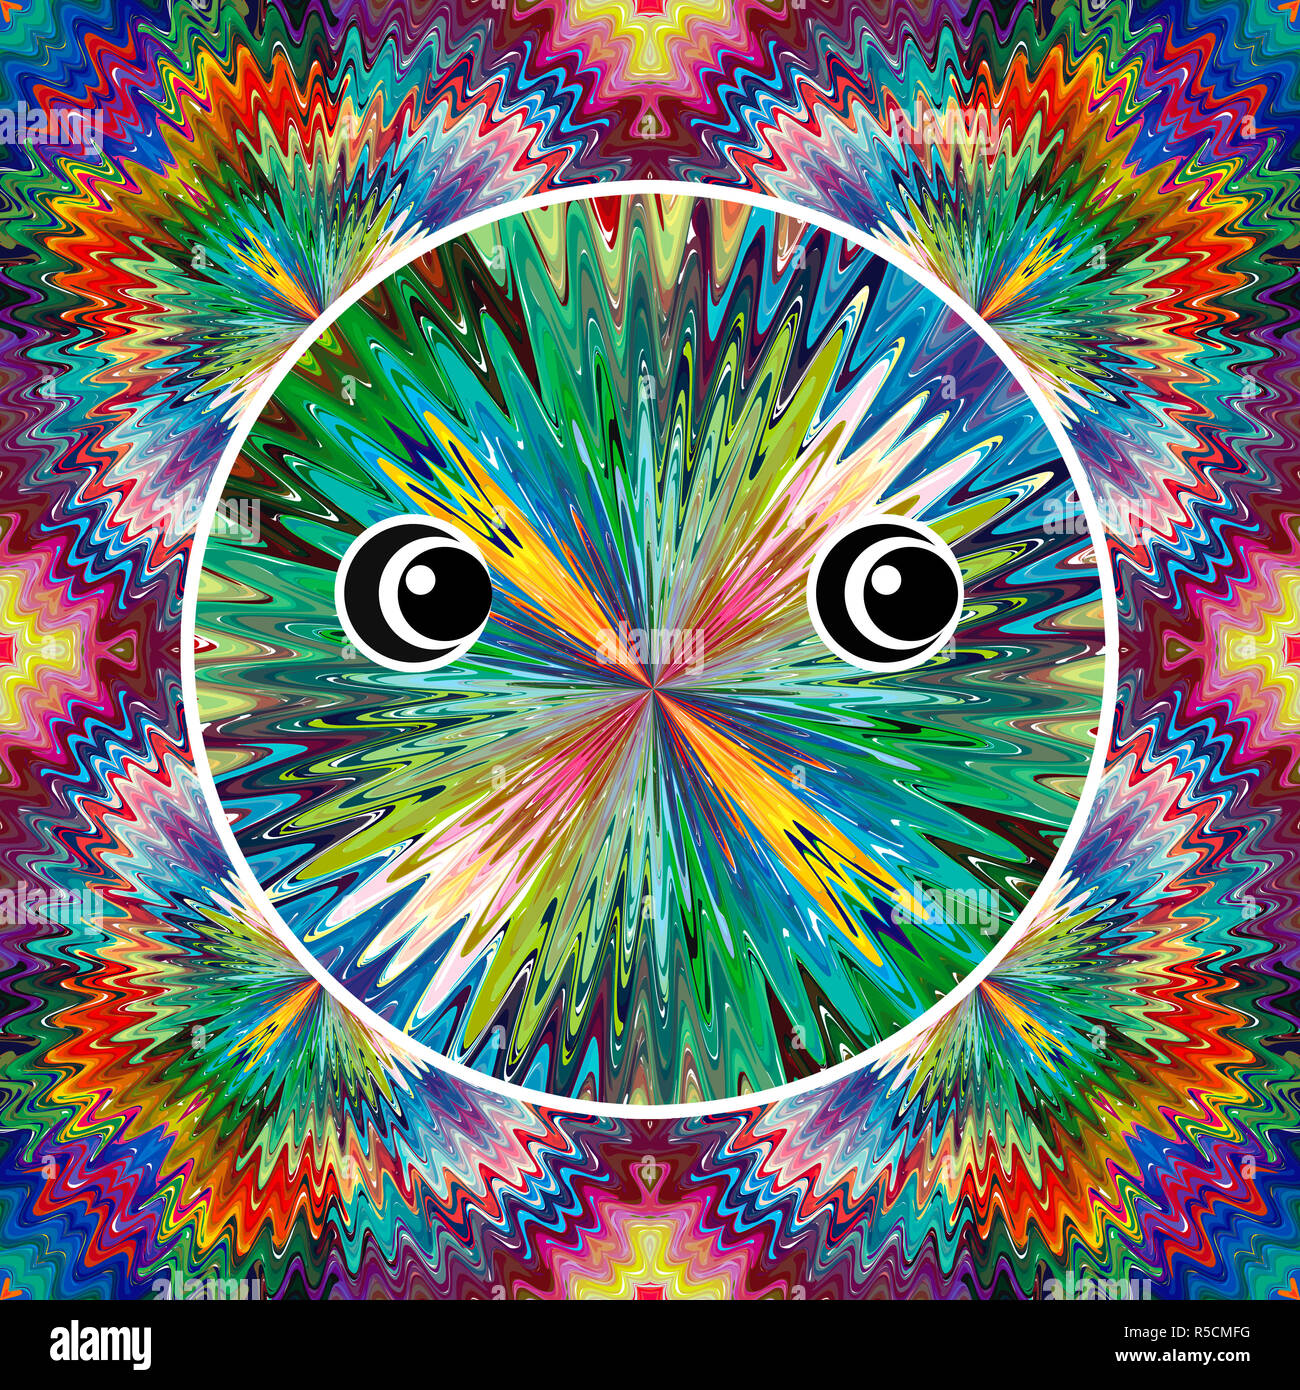 Drogenabhängiger erleben Halluzinatorisch anhaltenden Wahrnehmungsstörungen durch LSD, Meskalin oder Ecstasy Stockfoto